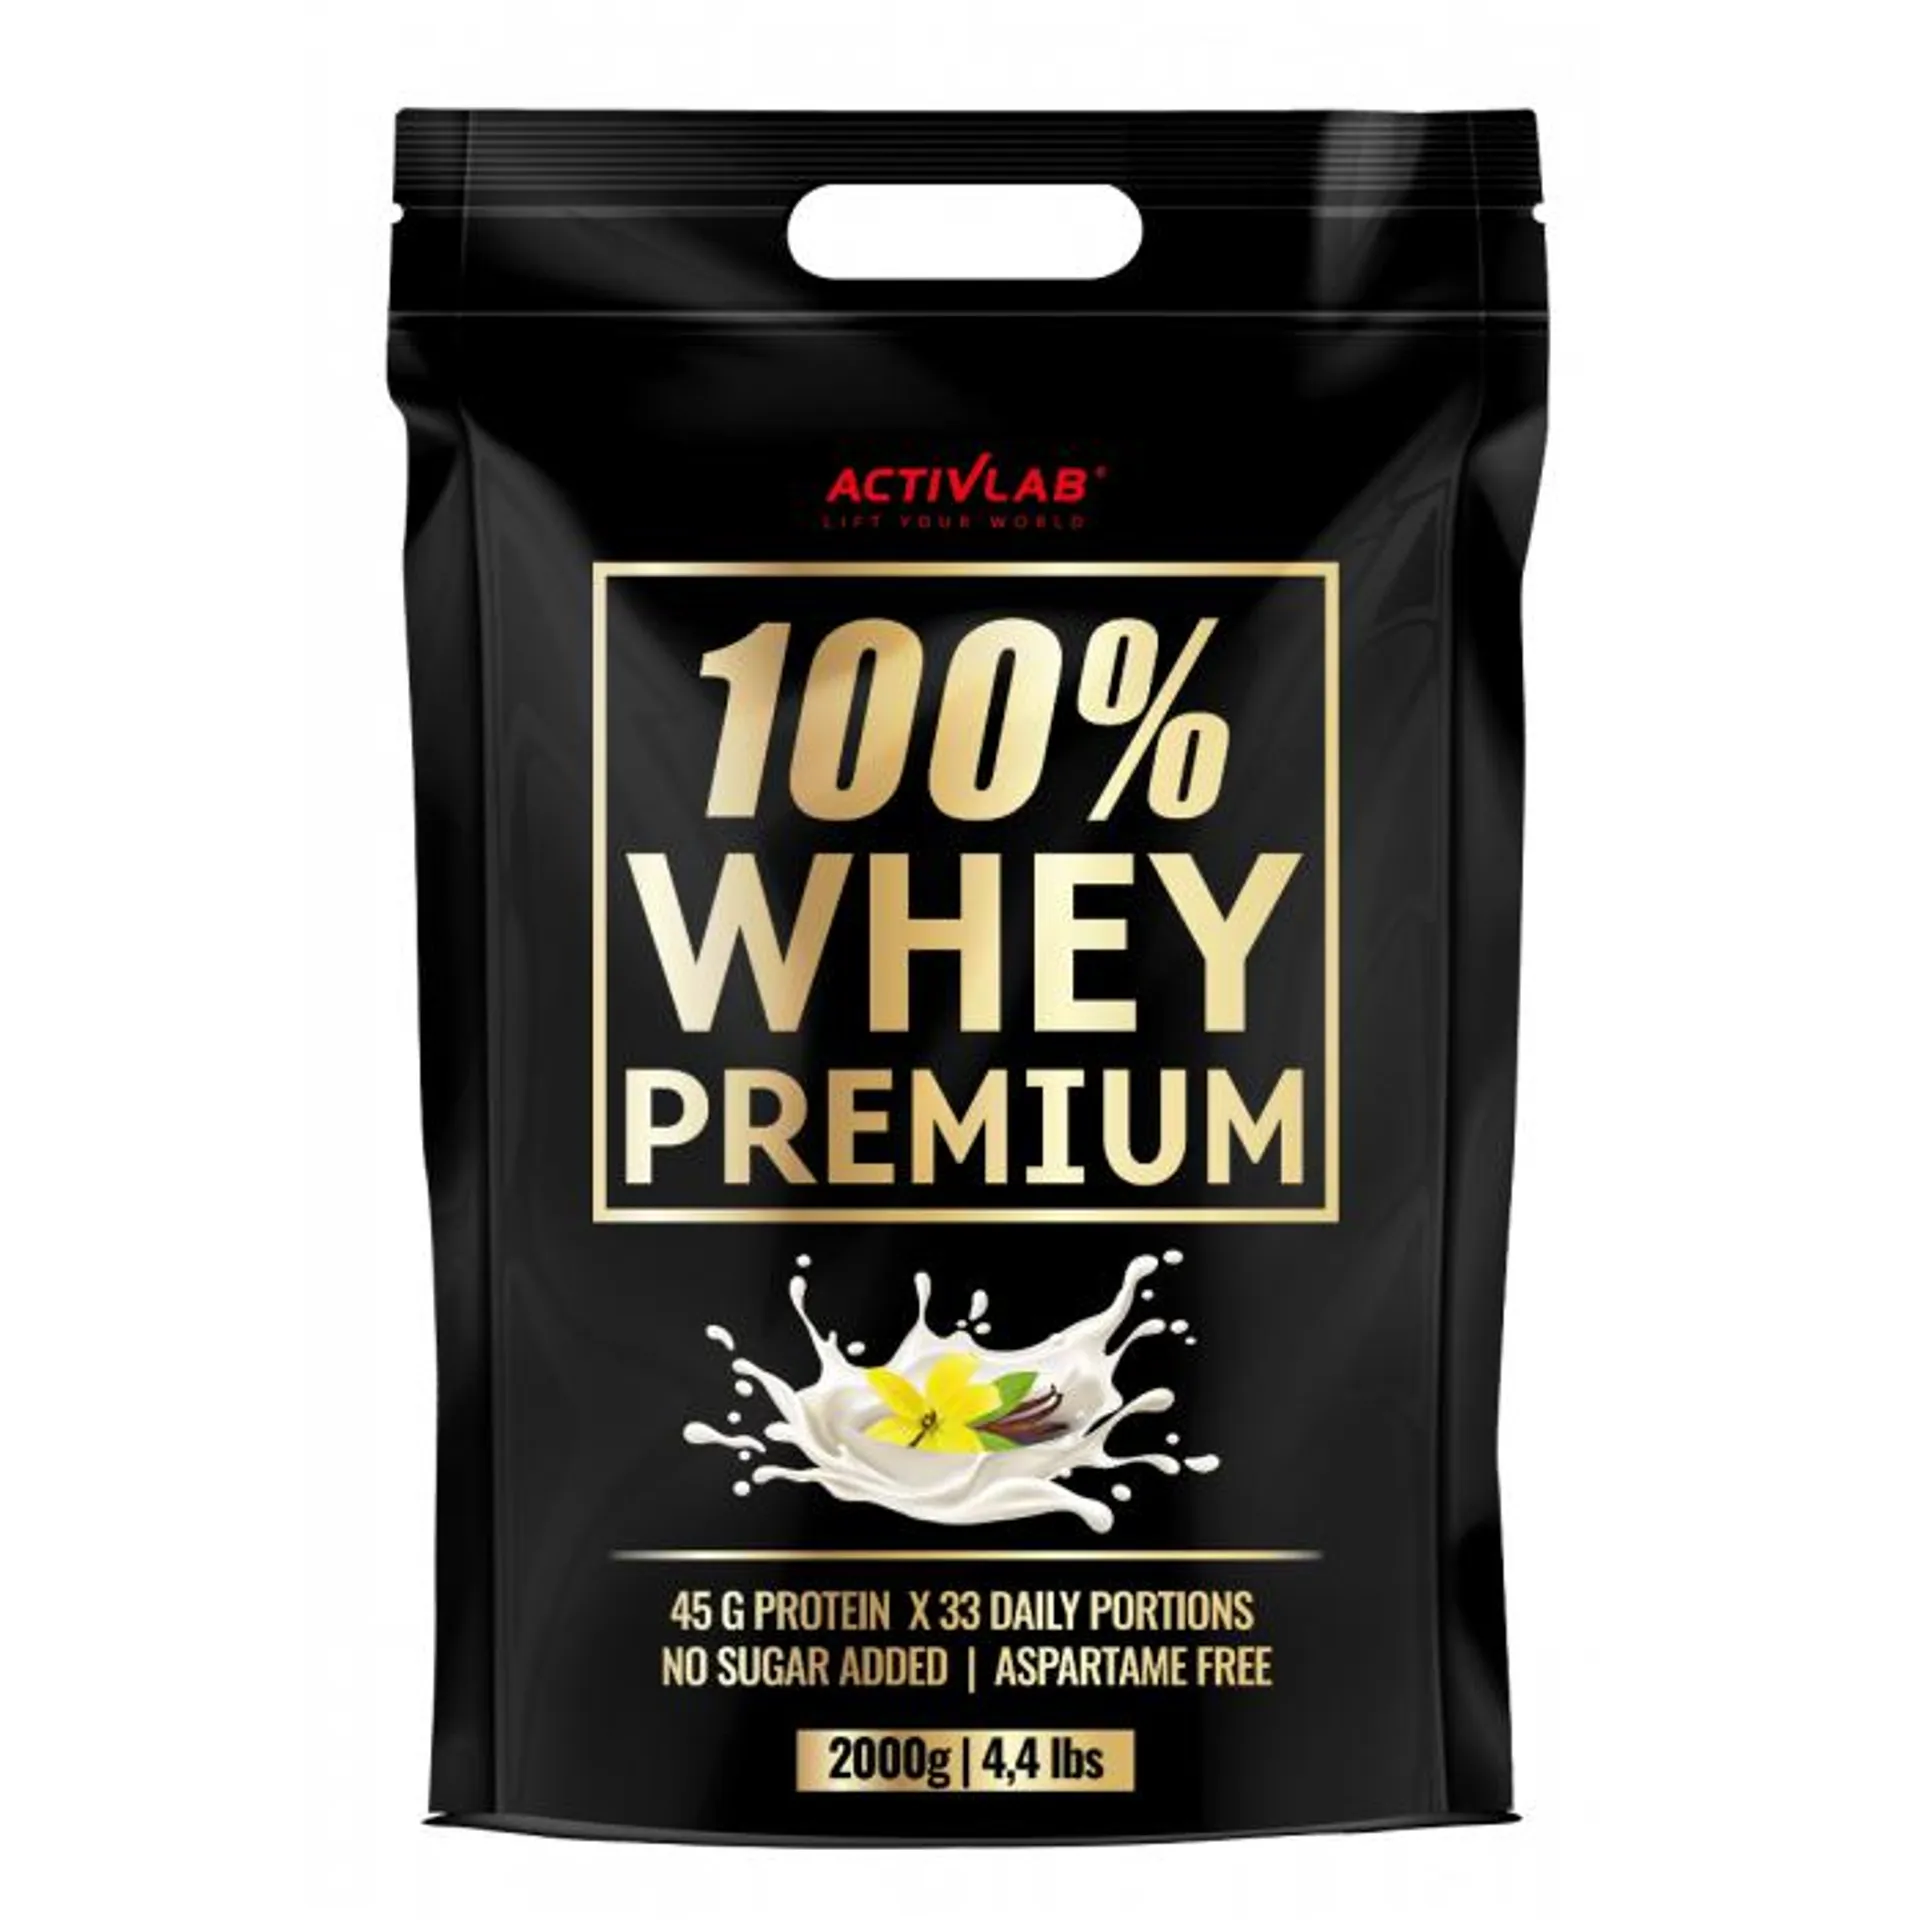 100% Whey Premium fehérje - Activlab